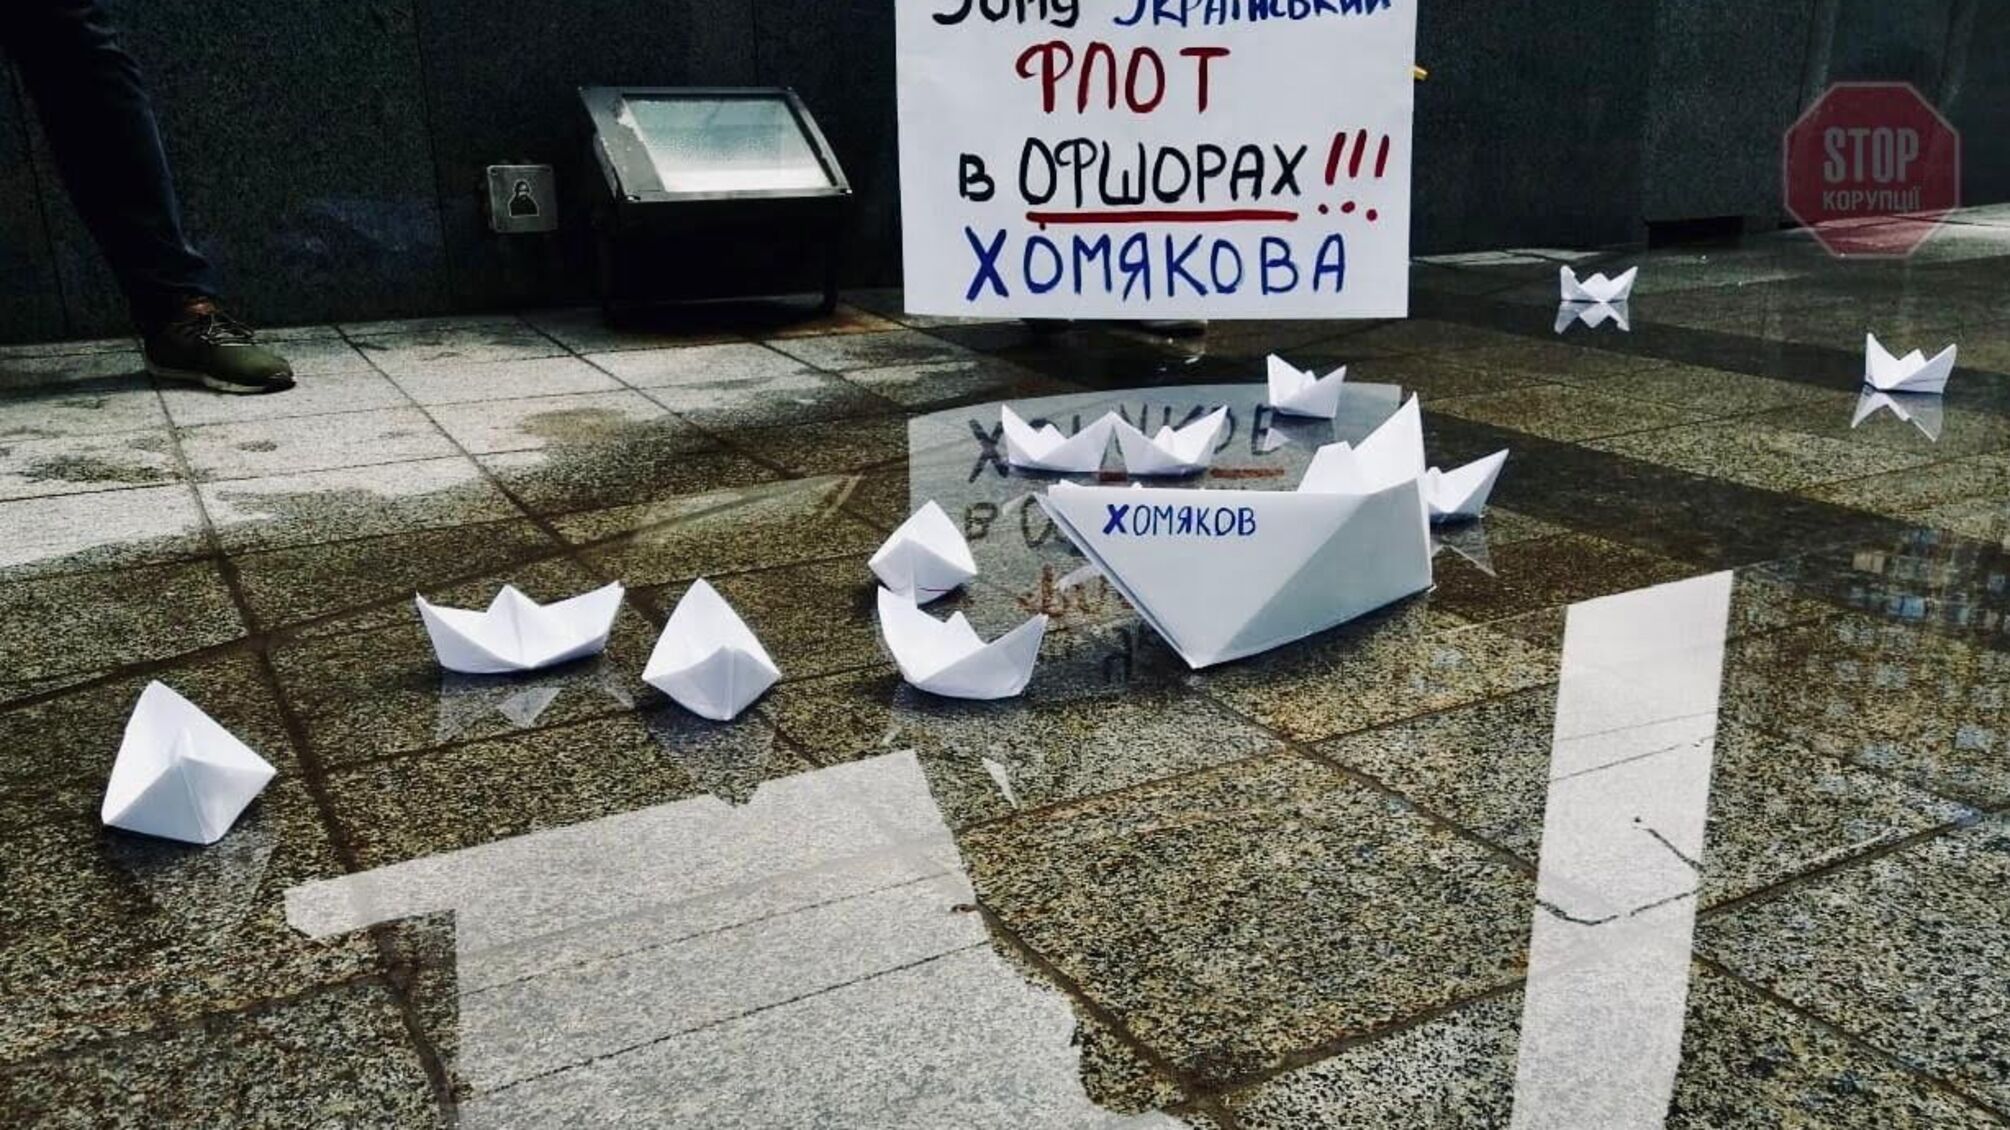 Інсайд: очільник УДП Хомяков банкрутить пароплавство, аби продати його за безцінь «Трансшипу»